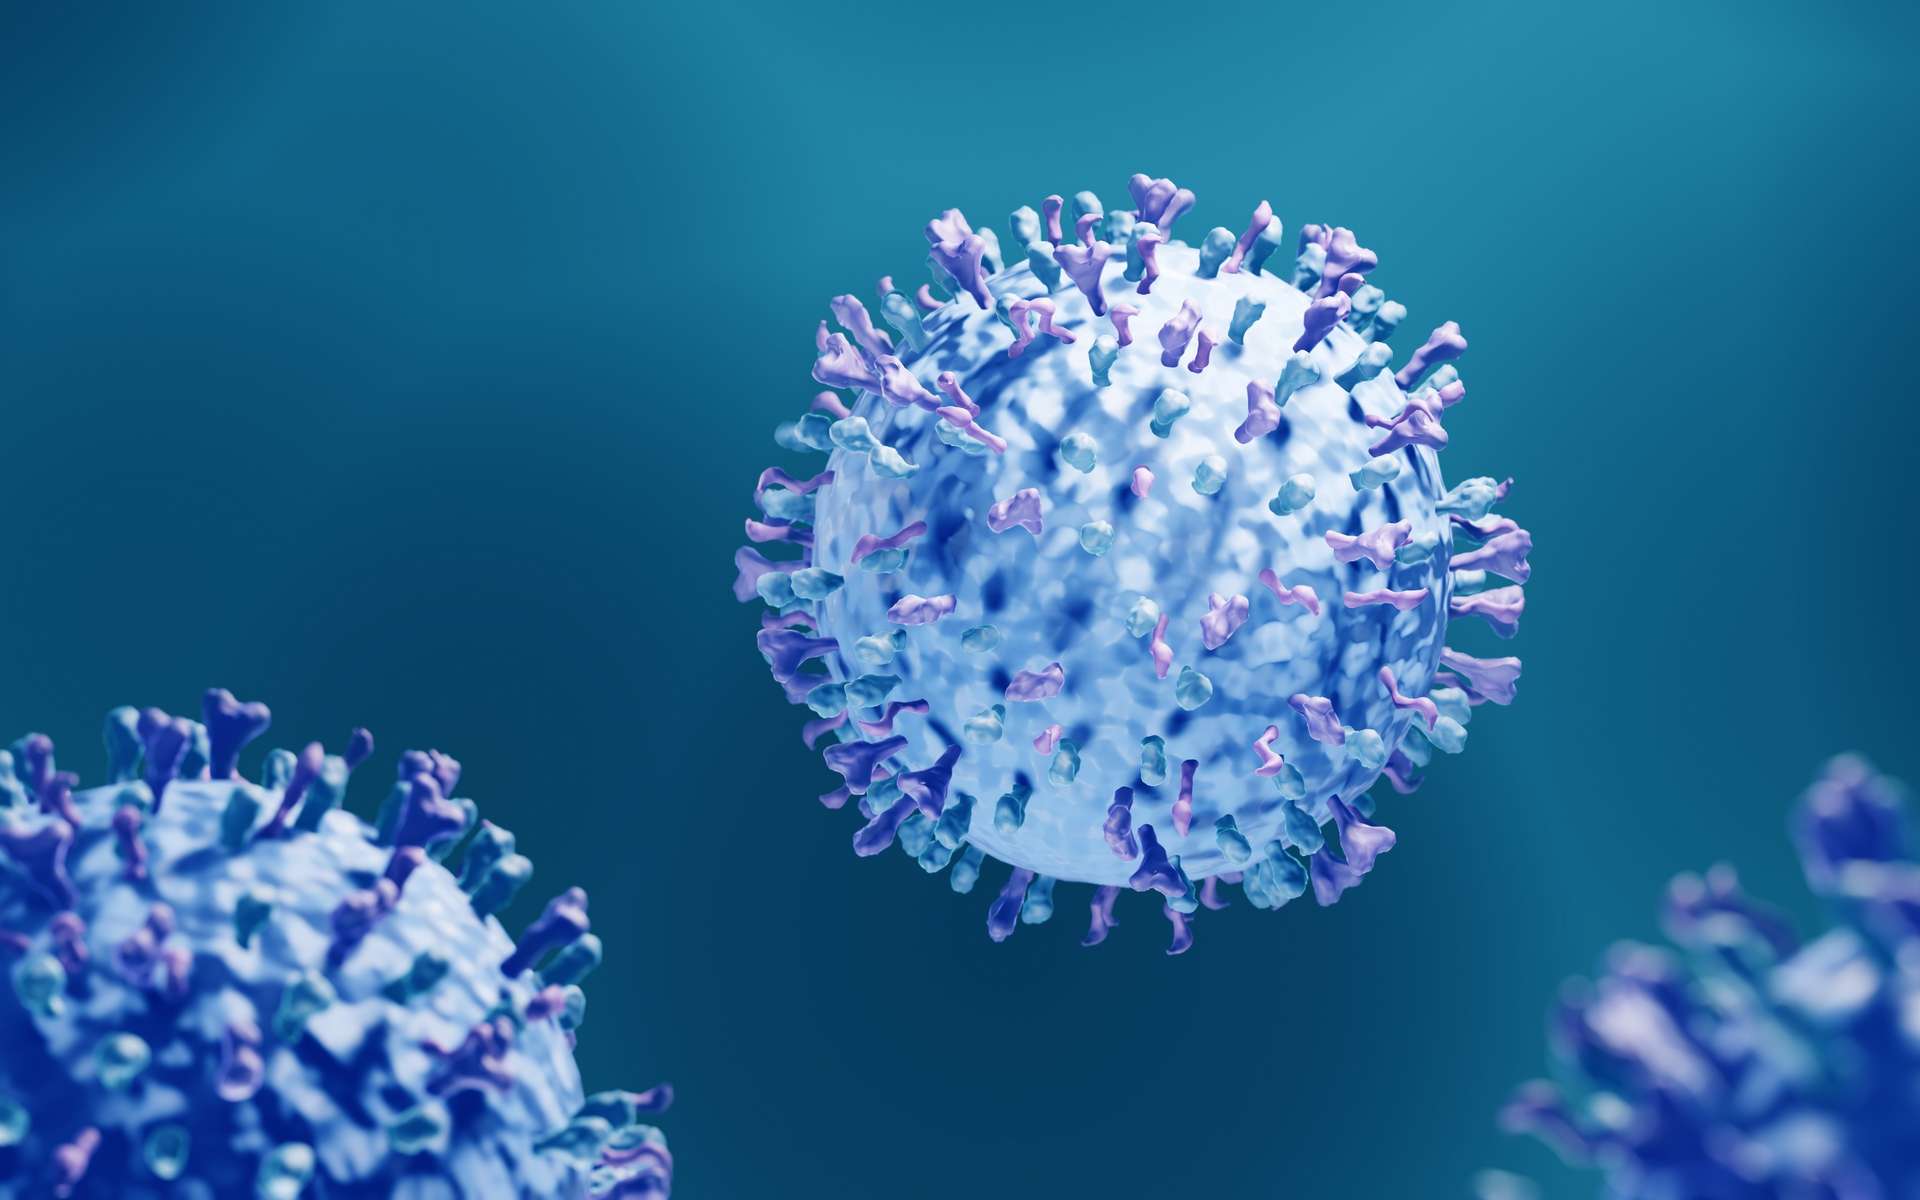 Le métapneumovirus humain, un virus mal connu, responsable d'un pic d'infections aux États-Unis